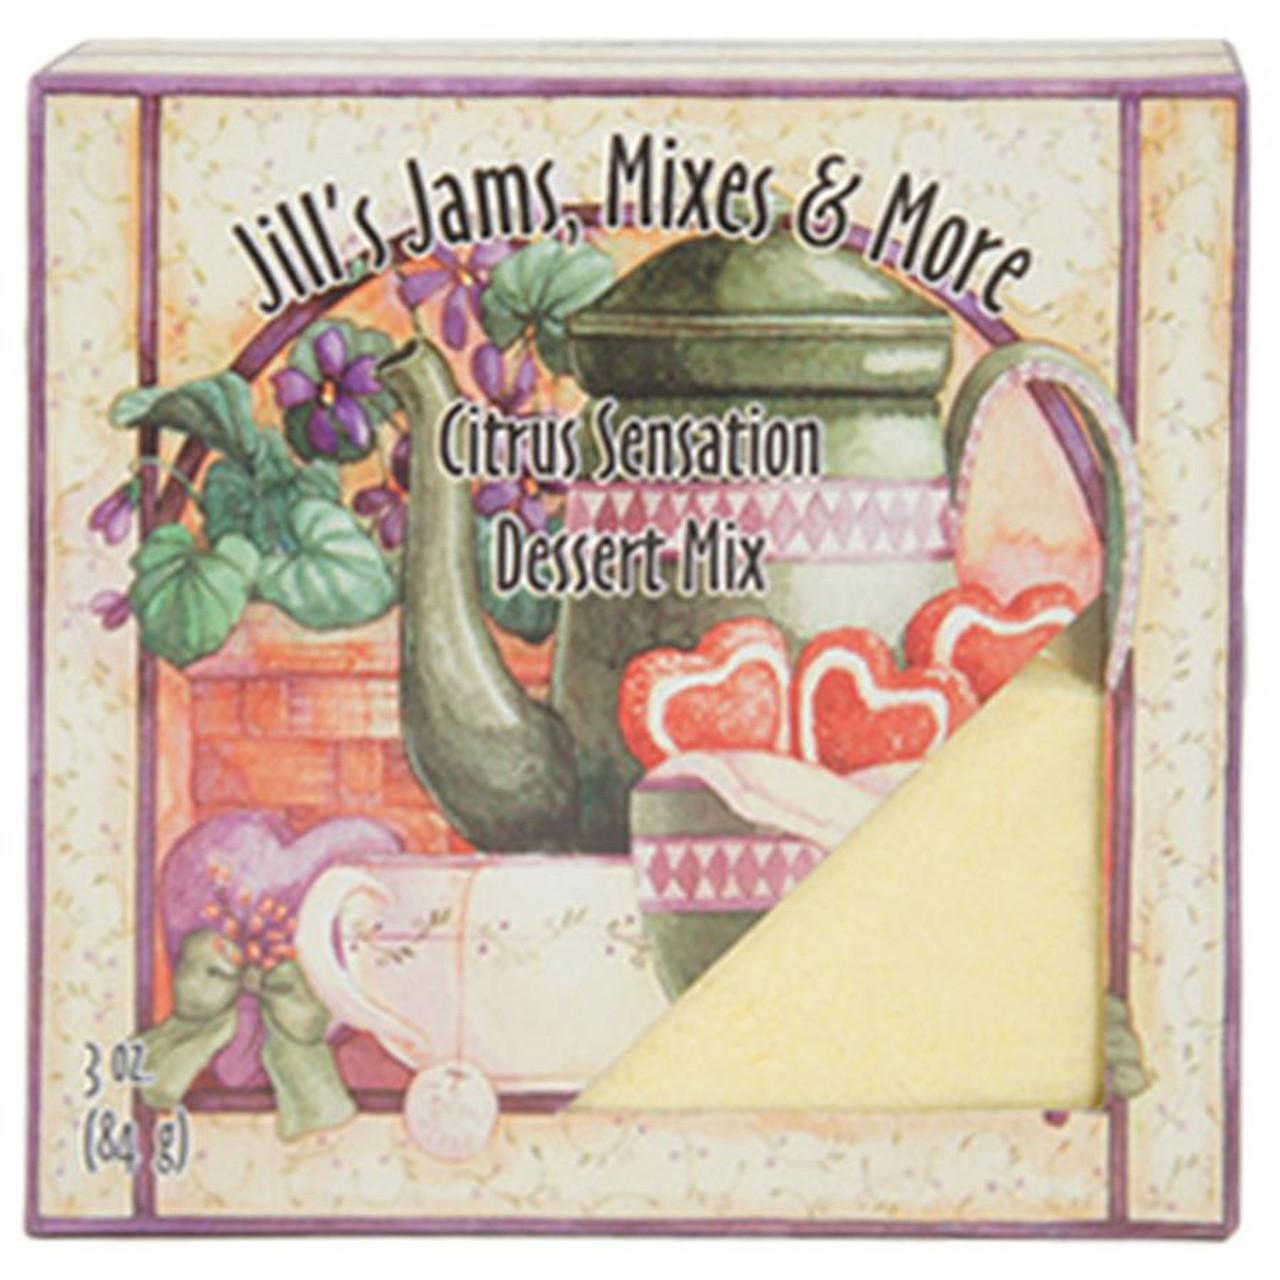 Jill's Jams, Mixes & More Citrus Sensation Dessert Mix